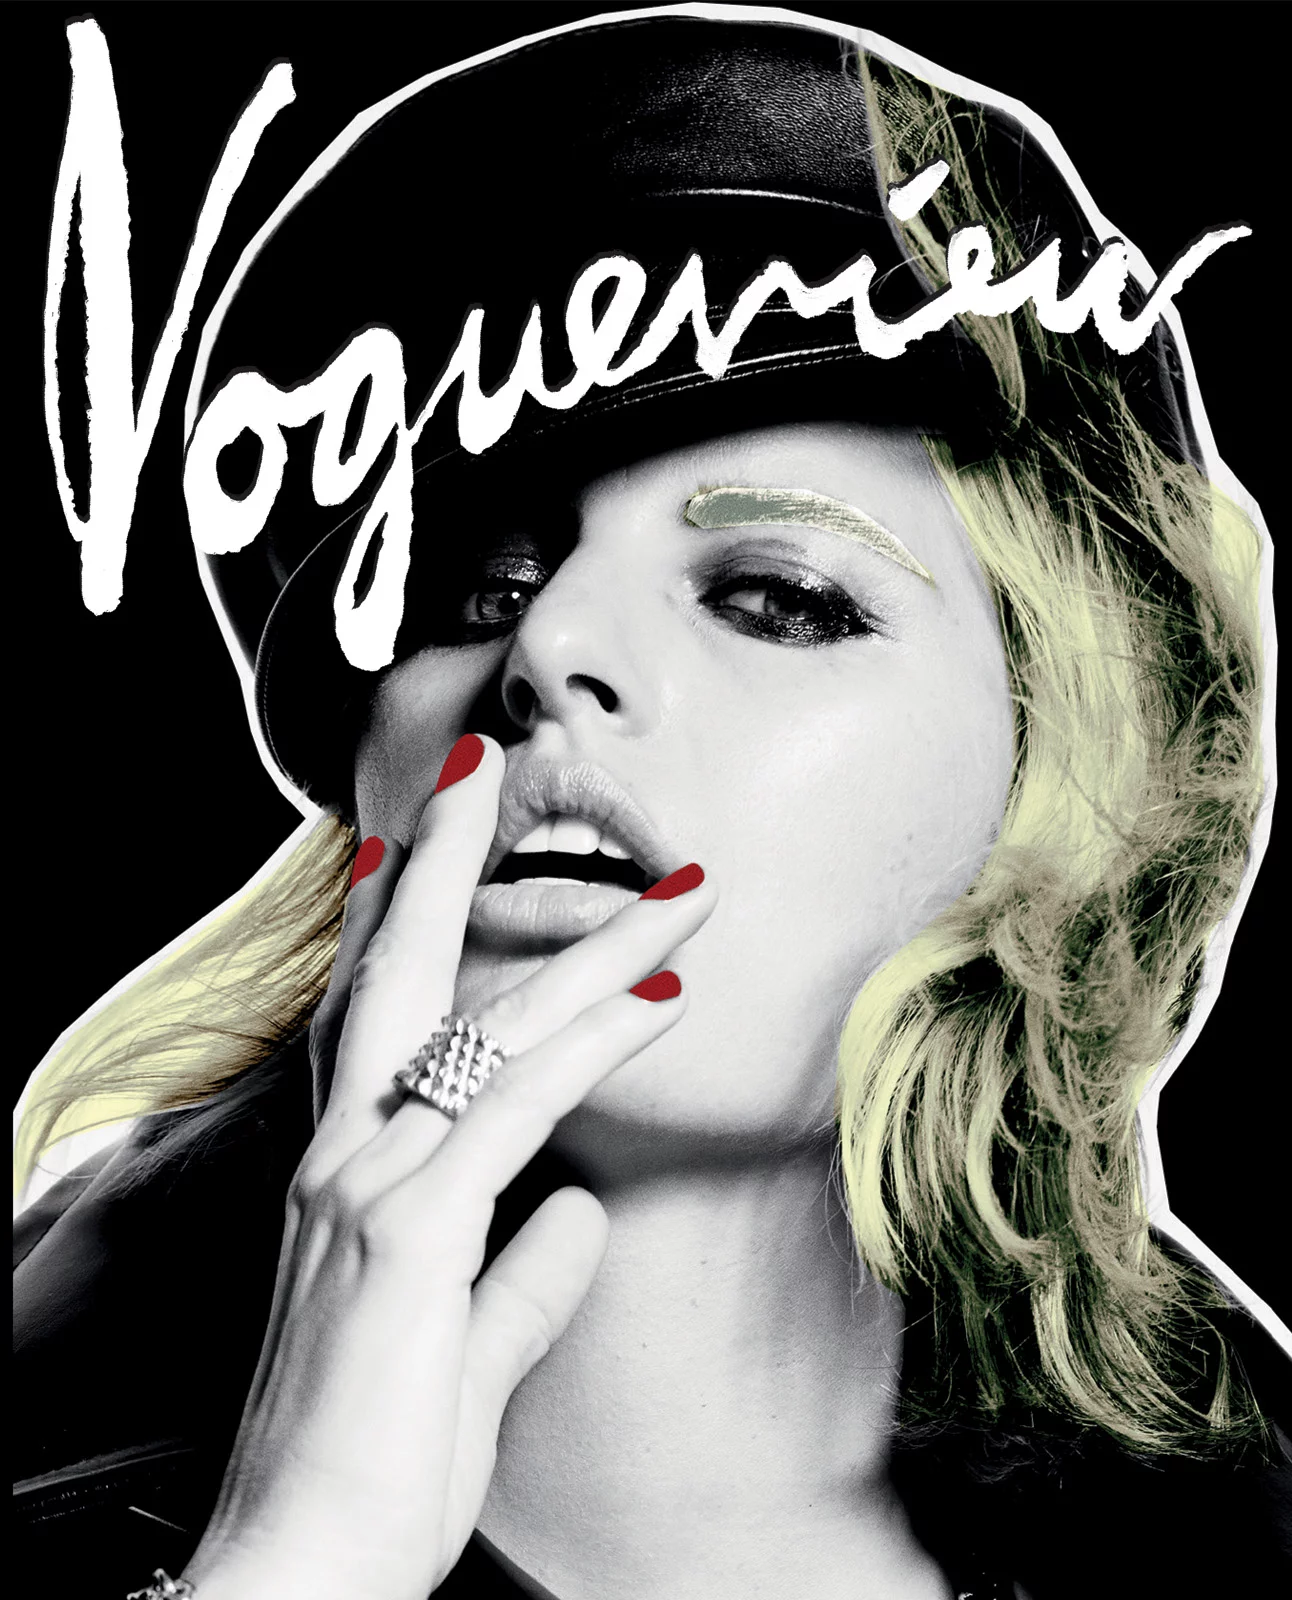 Vogue Czechoslovakia x Richard Bernstein x Karolina Kurkova 3 by Portis WASP